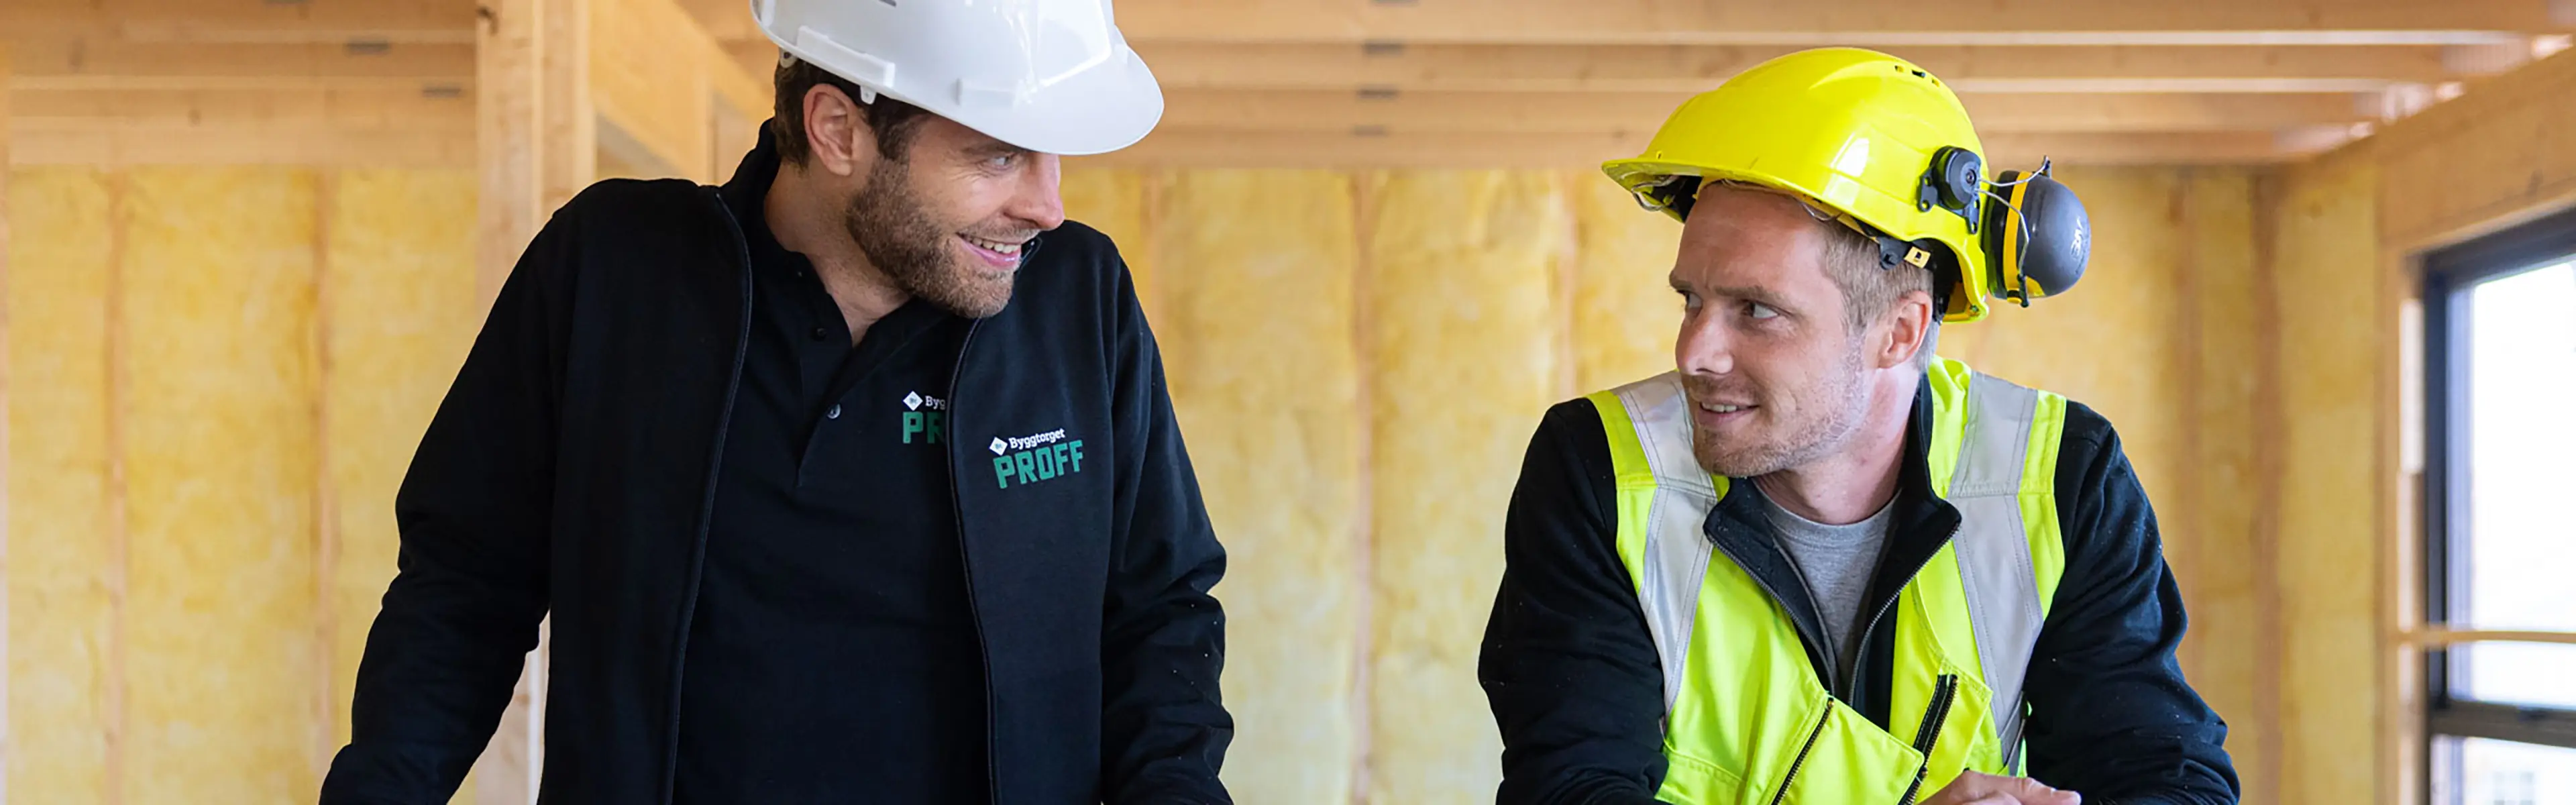 to håndverkere står inne på en byggeplass og smiler til hverandre